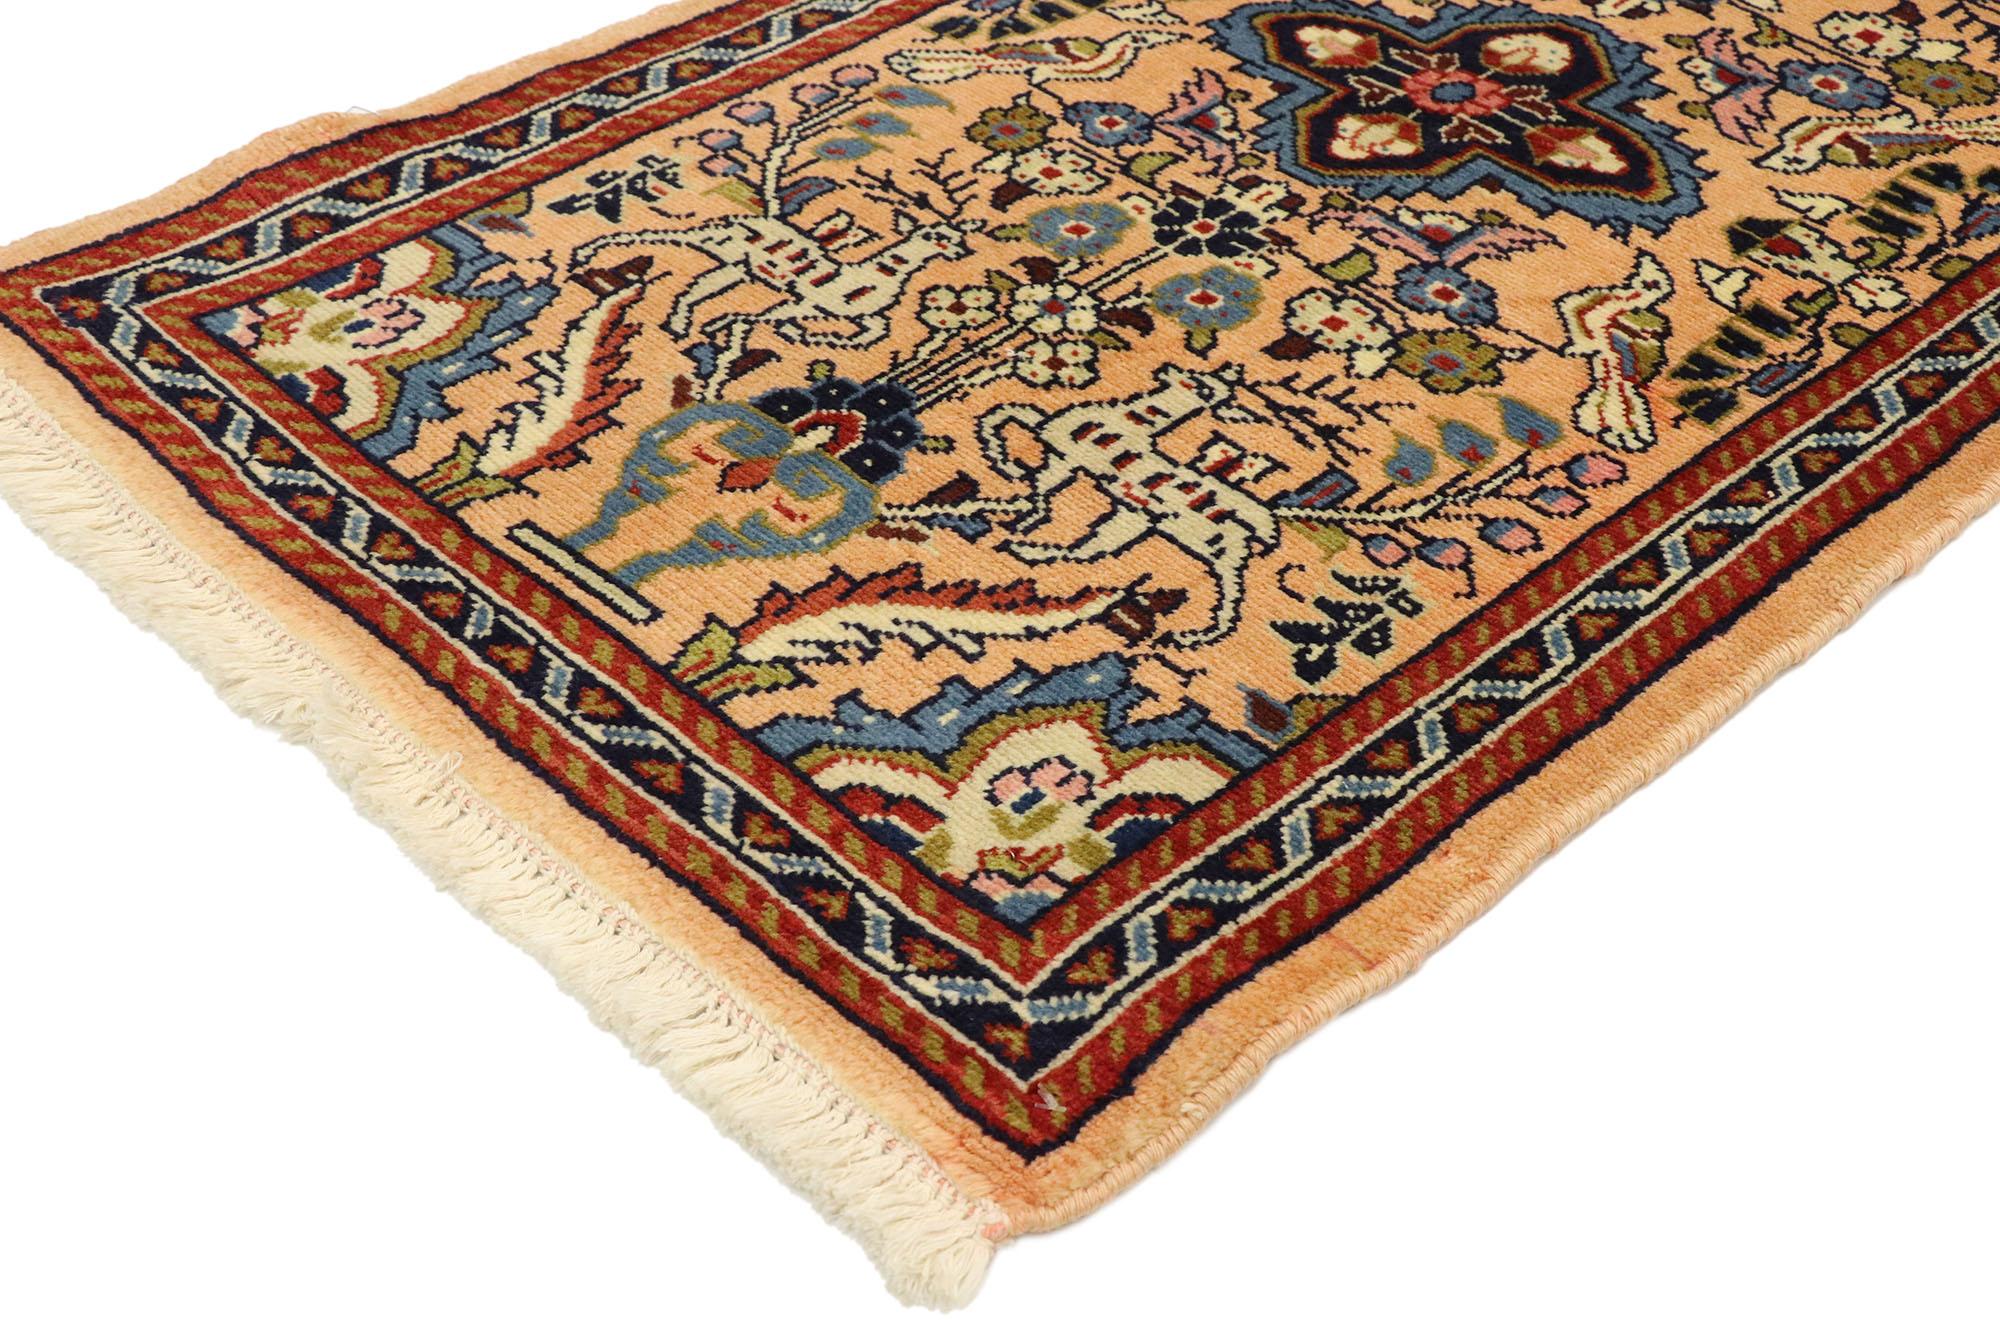 76070 Persischer Vasen-Teppich im französischen Barock-Stil. Dieser handgeknüpfte persische Sarouk-Teppich aus Wolle im Vintage-Stil ist der Inbegriff des französischen Barocks und des viktorianischen Stils. Er wird auch den anspruchsvollsten